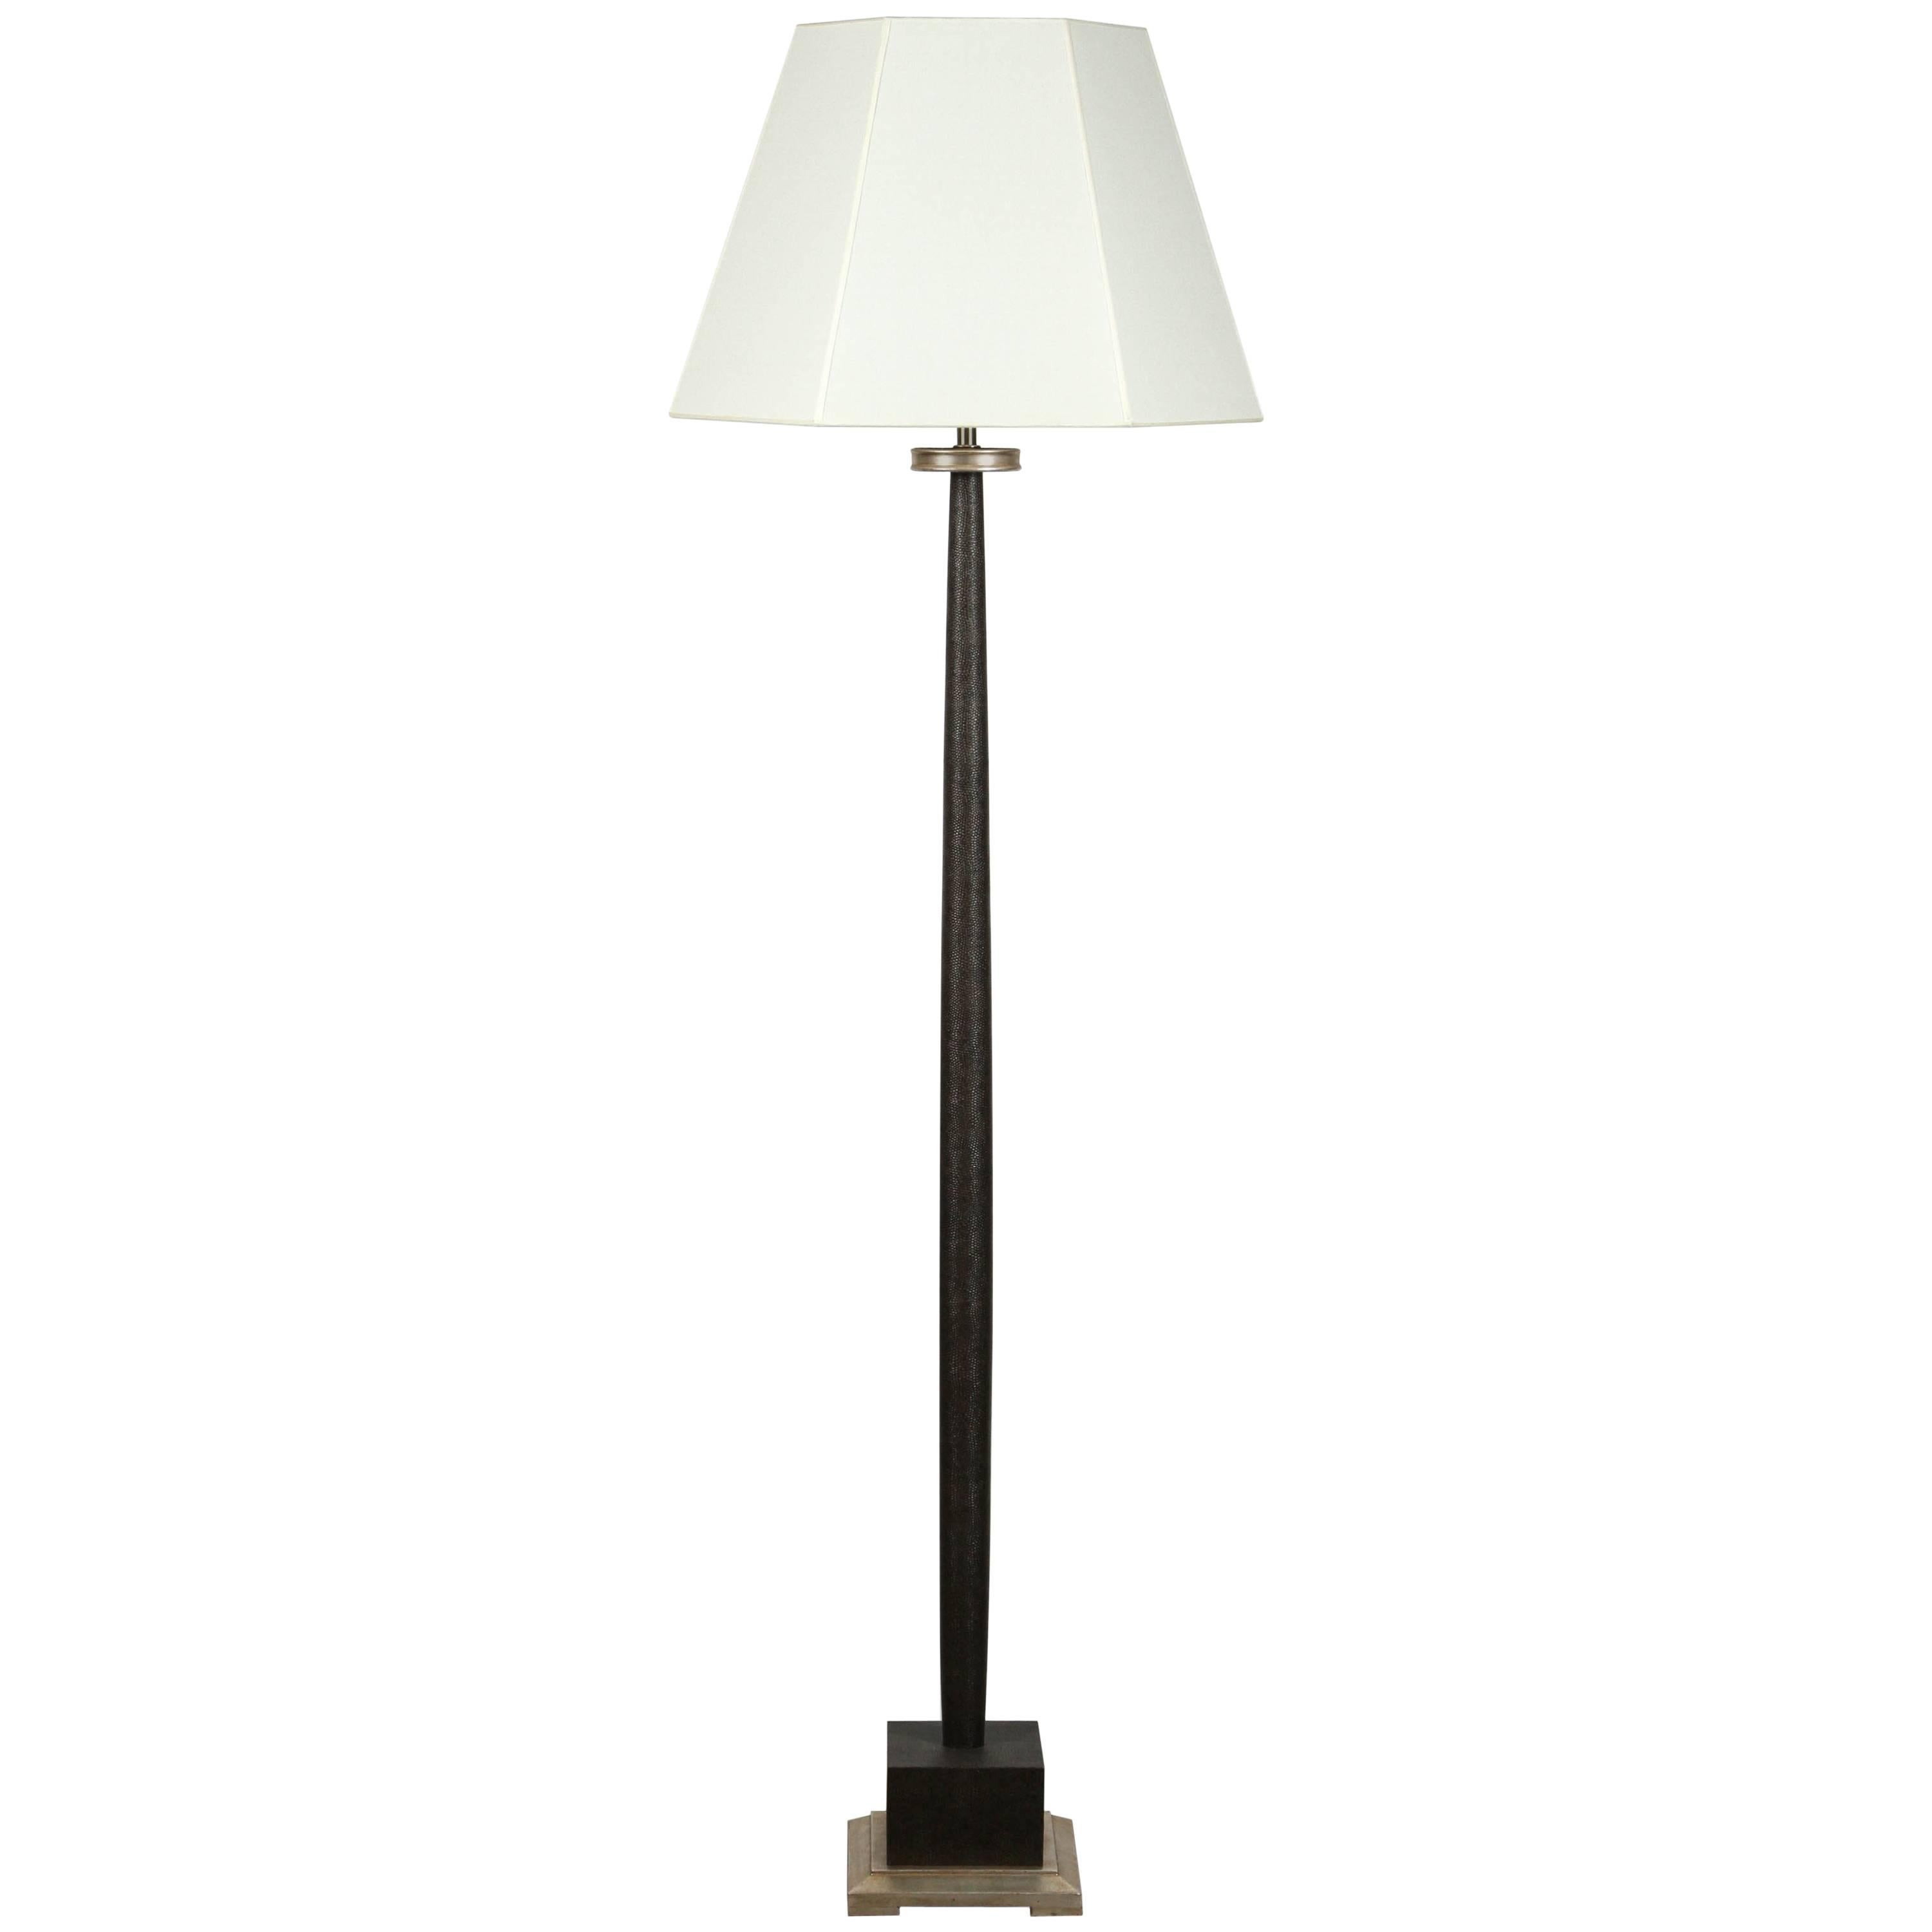 Paul Marra Faux Shagreen Floor Lamp 1940s Inspired, Mocha For Sale